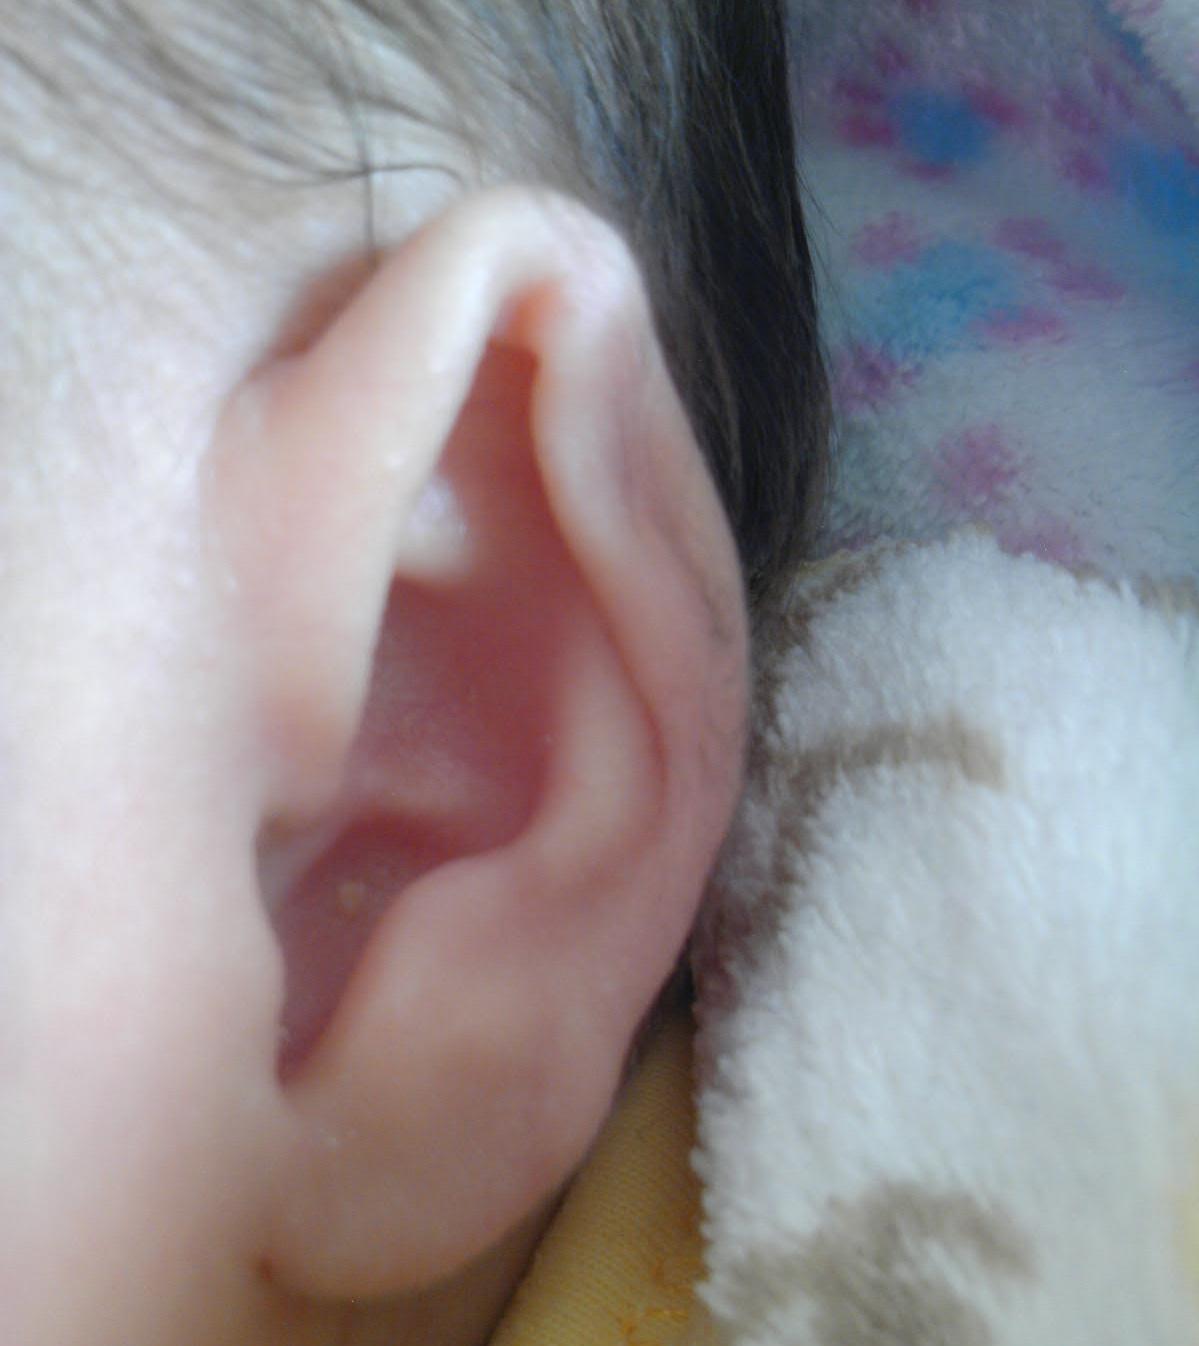 婴儿出生时一只耳朵上的软骨被压扁了,请问能怎么做?